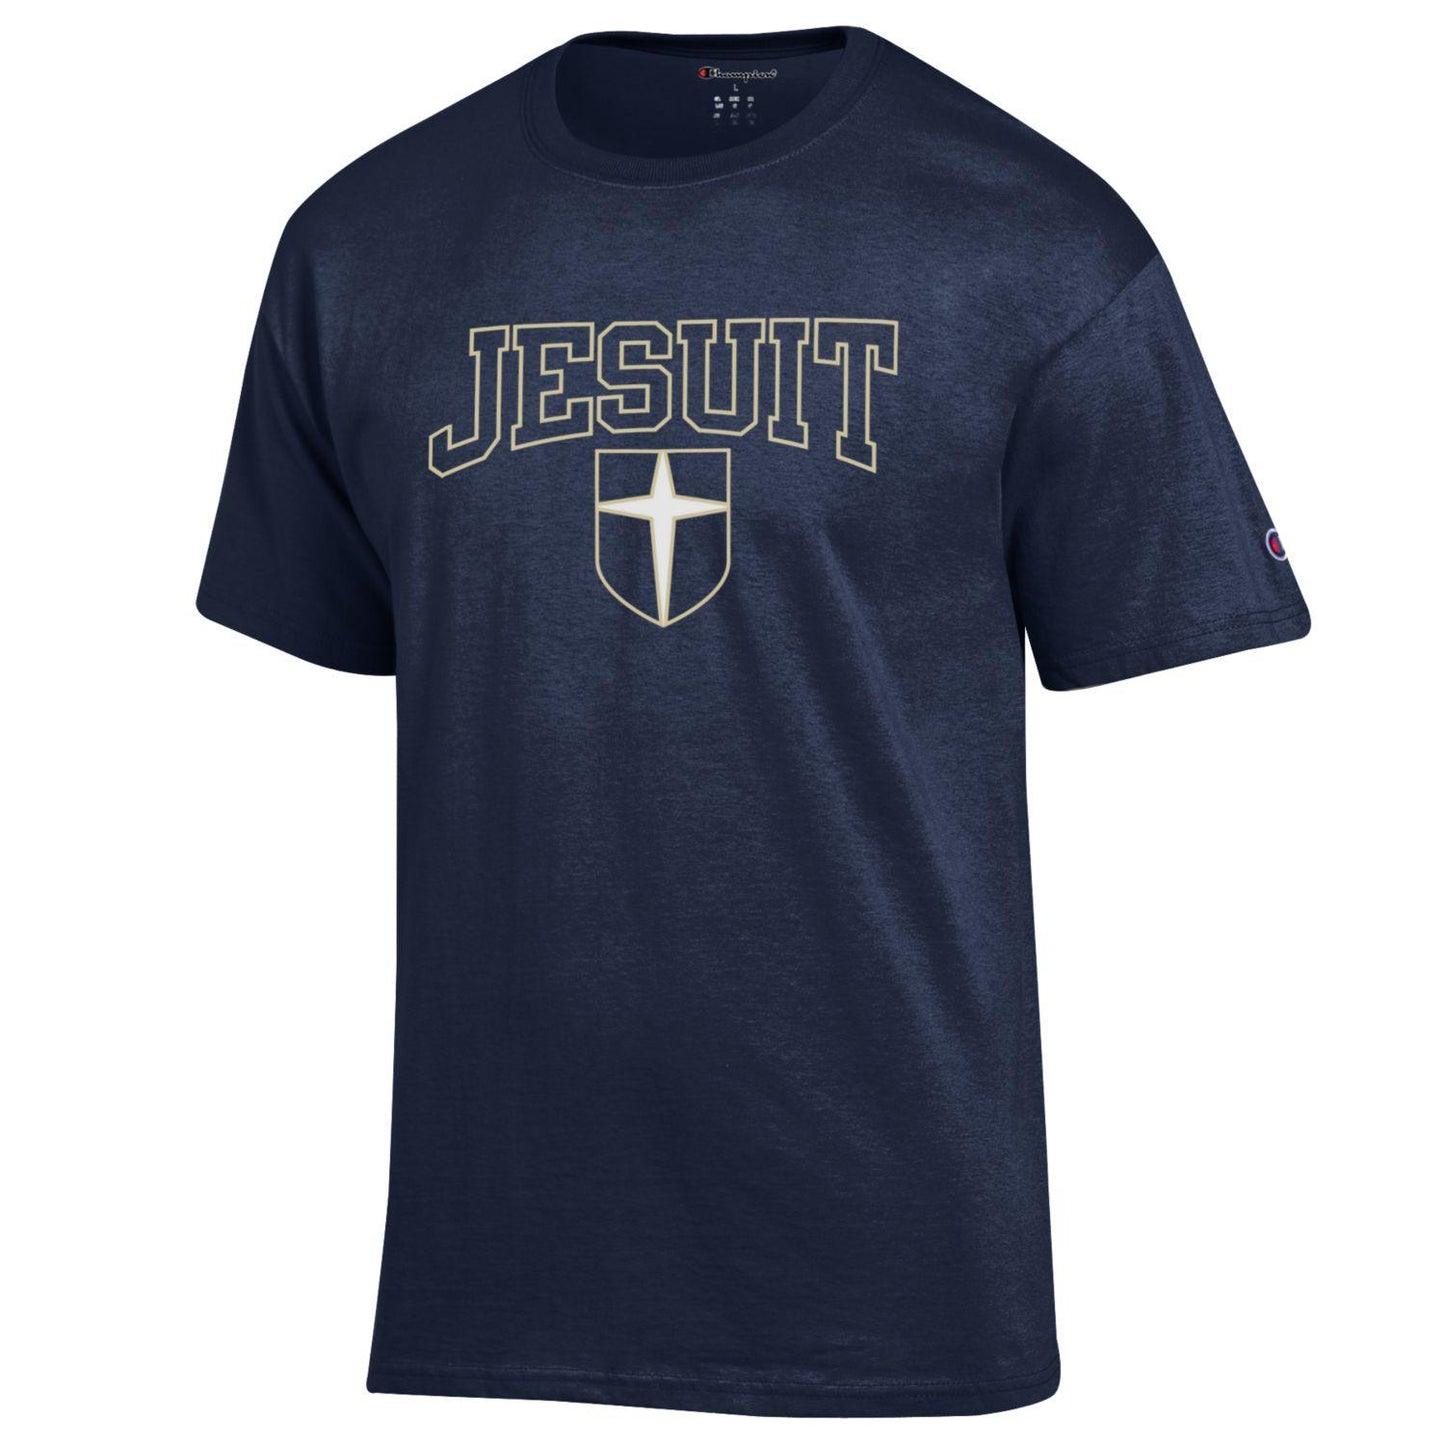 Classic Jesuit Navy shield T-shirt